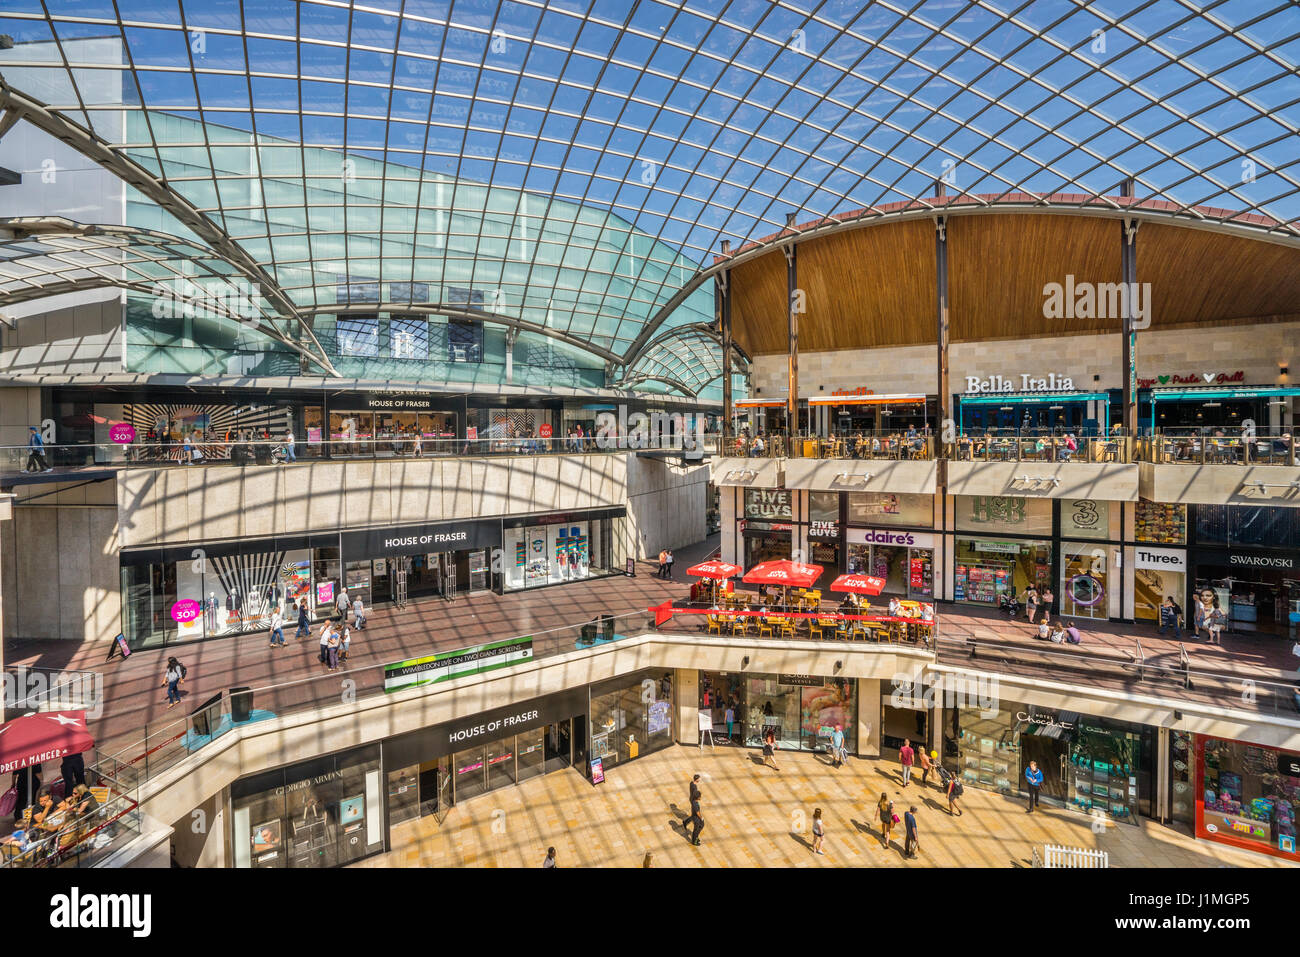 Royaume-uni, le sud-ouest de l'Angleterre, Bristol, le centre commercial Cabot Circus avec un immense toit lambrissé de verre Banque D'Images